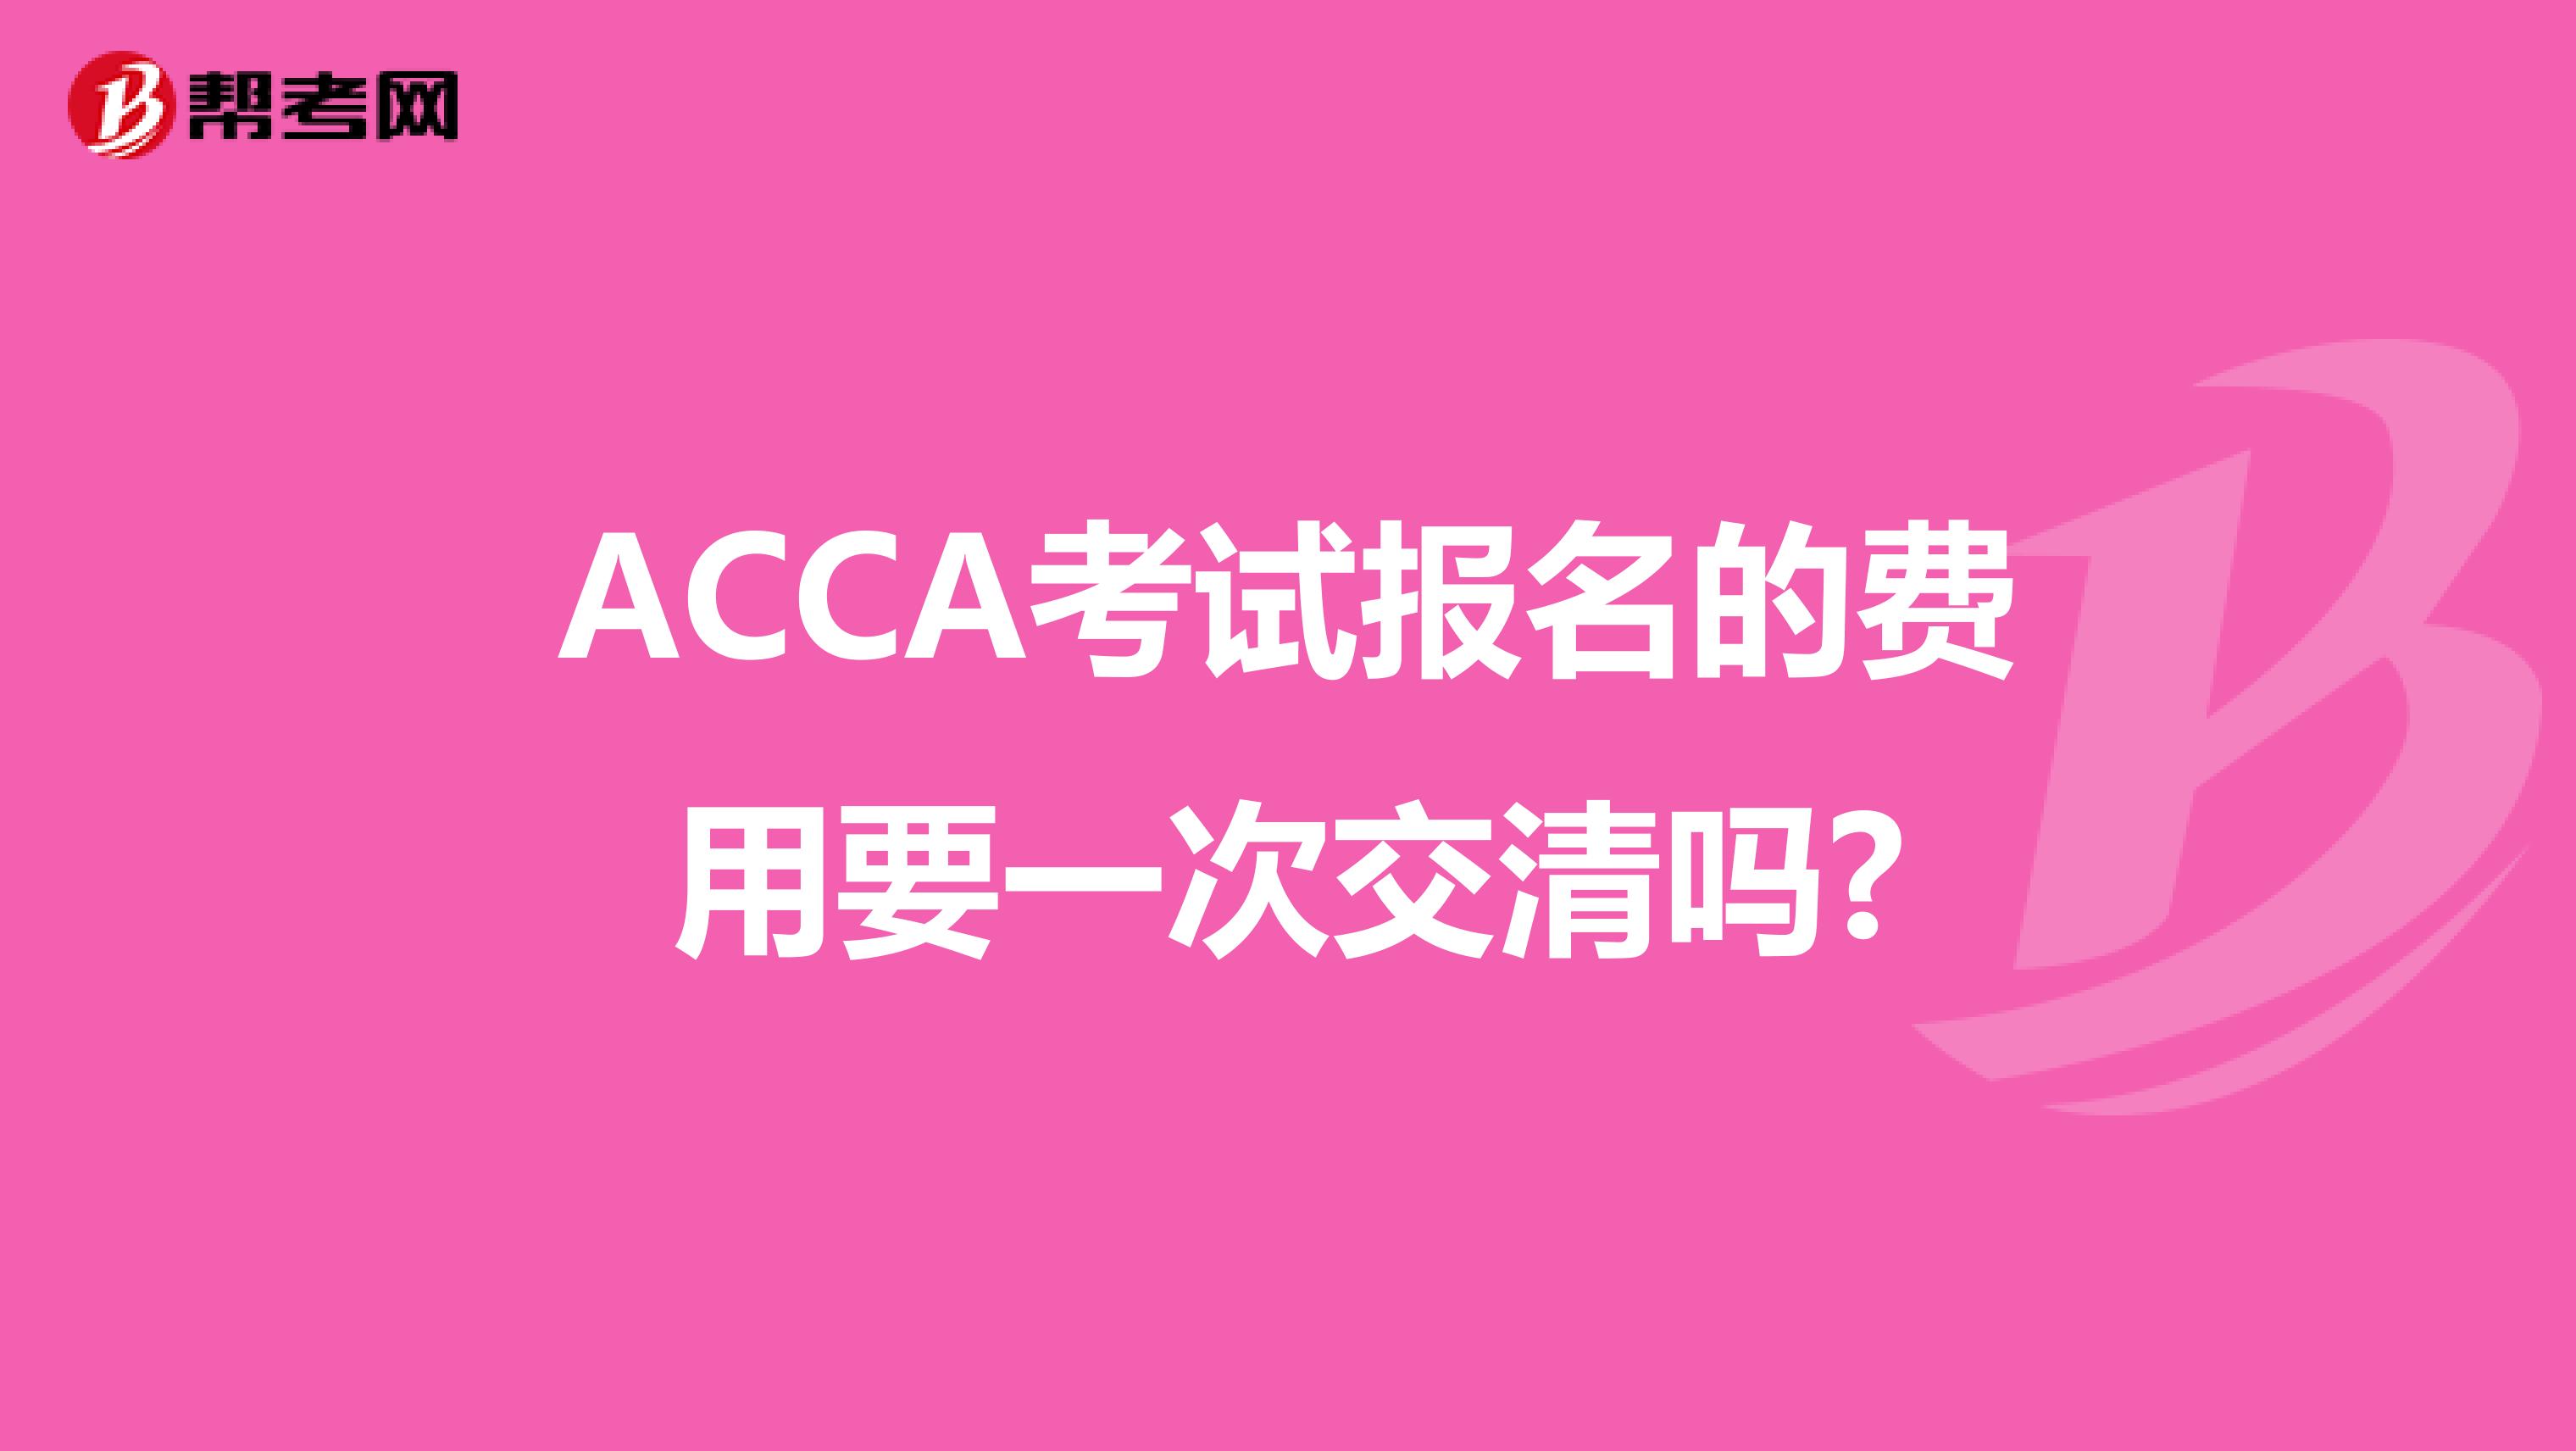 ACCA考试报名的费用要一次交清吗?